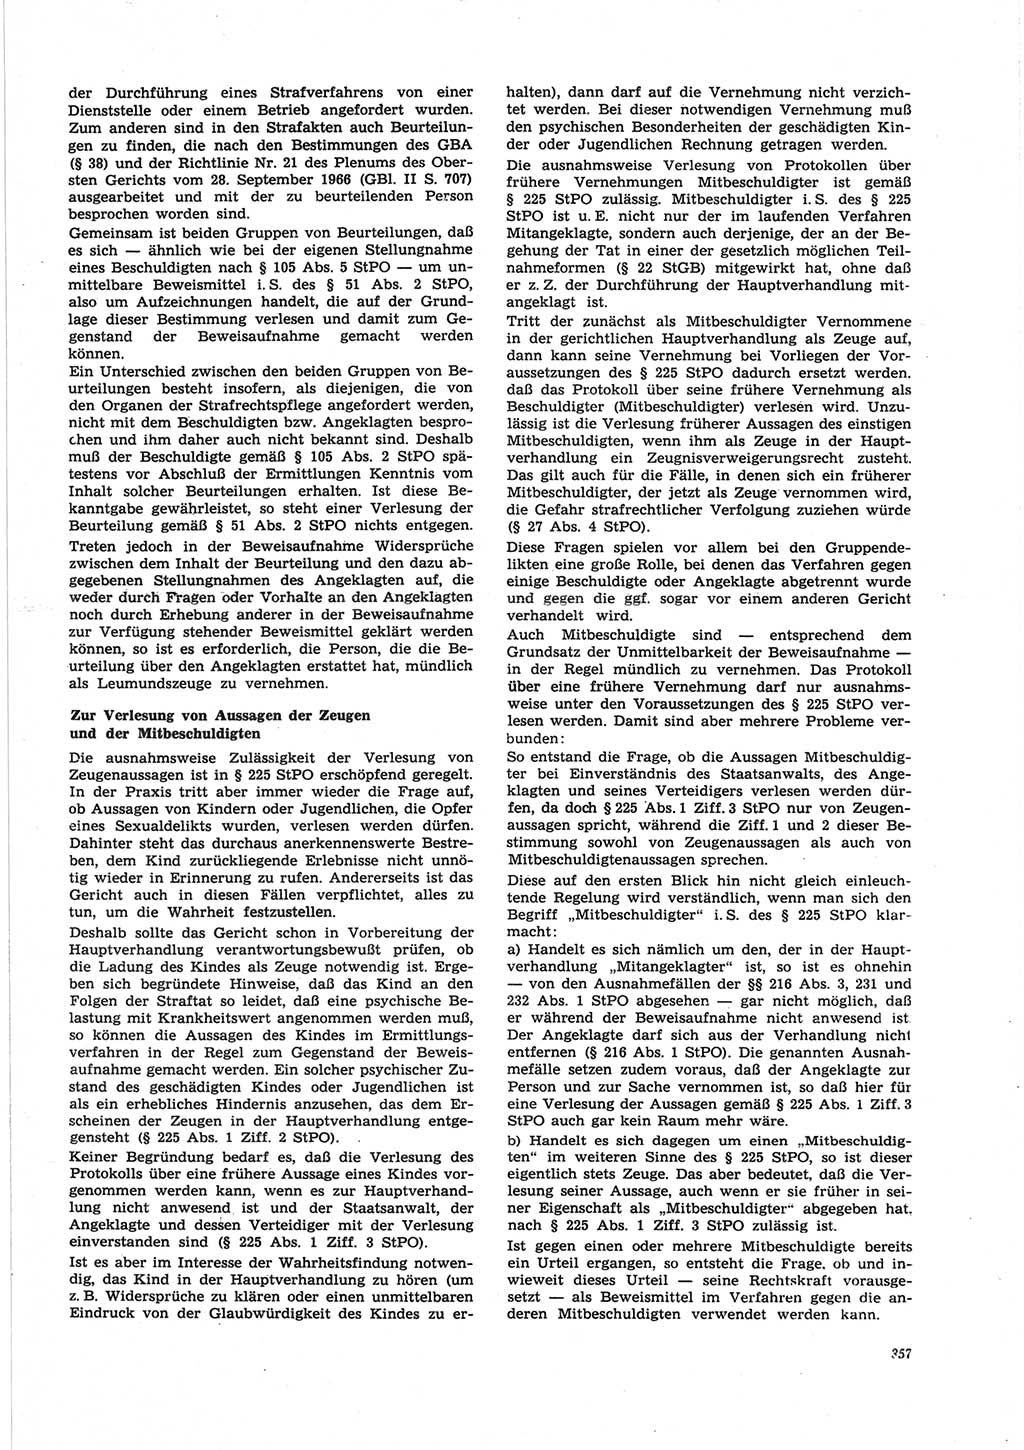 Neue Justiz (NJ), Zeitschrift für Recht und Rechtswissenschaft [Deutsche Demokratische Republik (DDR)], 25. Jahrgang 1971, Seite 357 (NJ DDR 1971, S. 357)